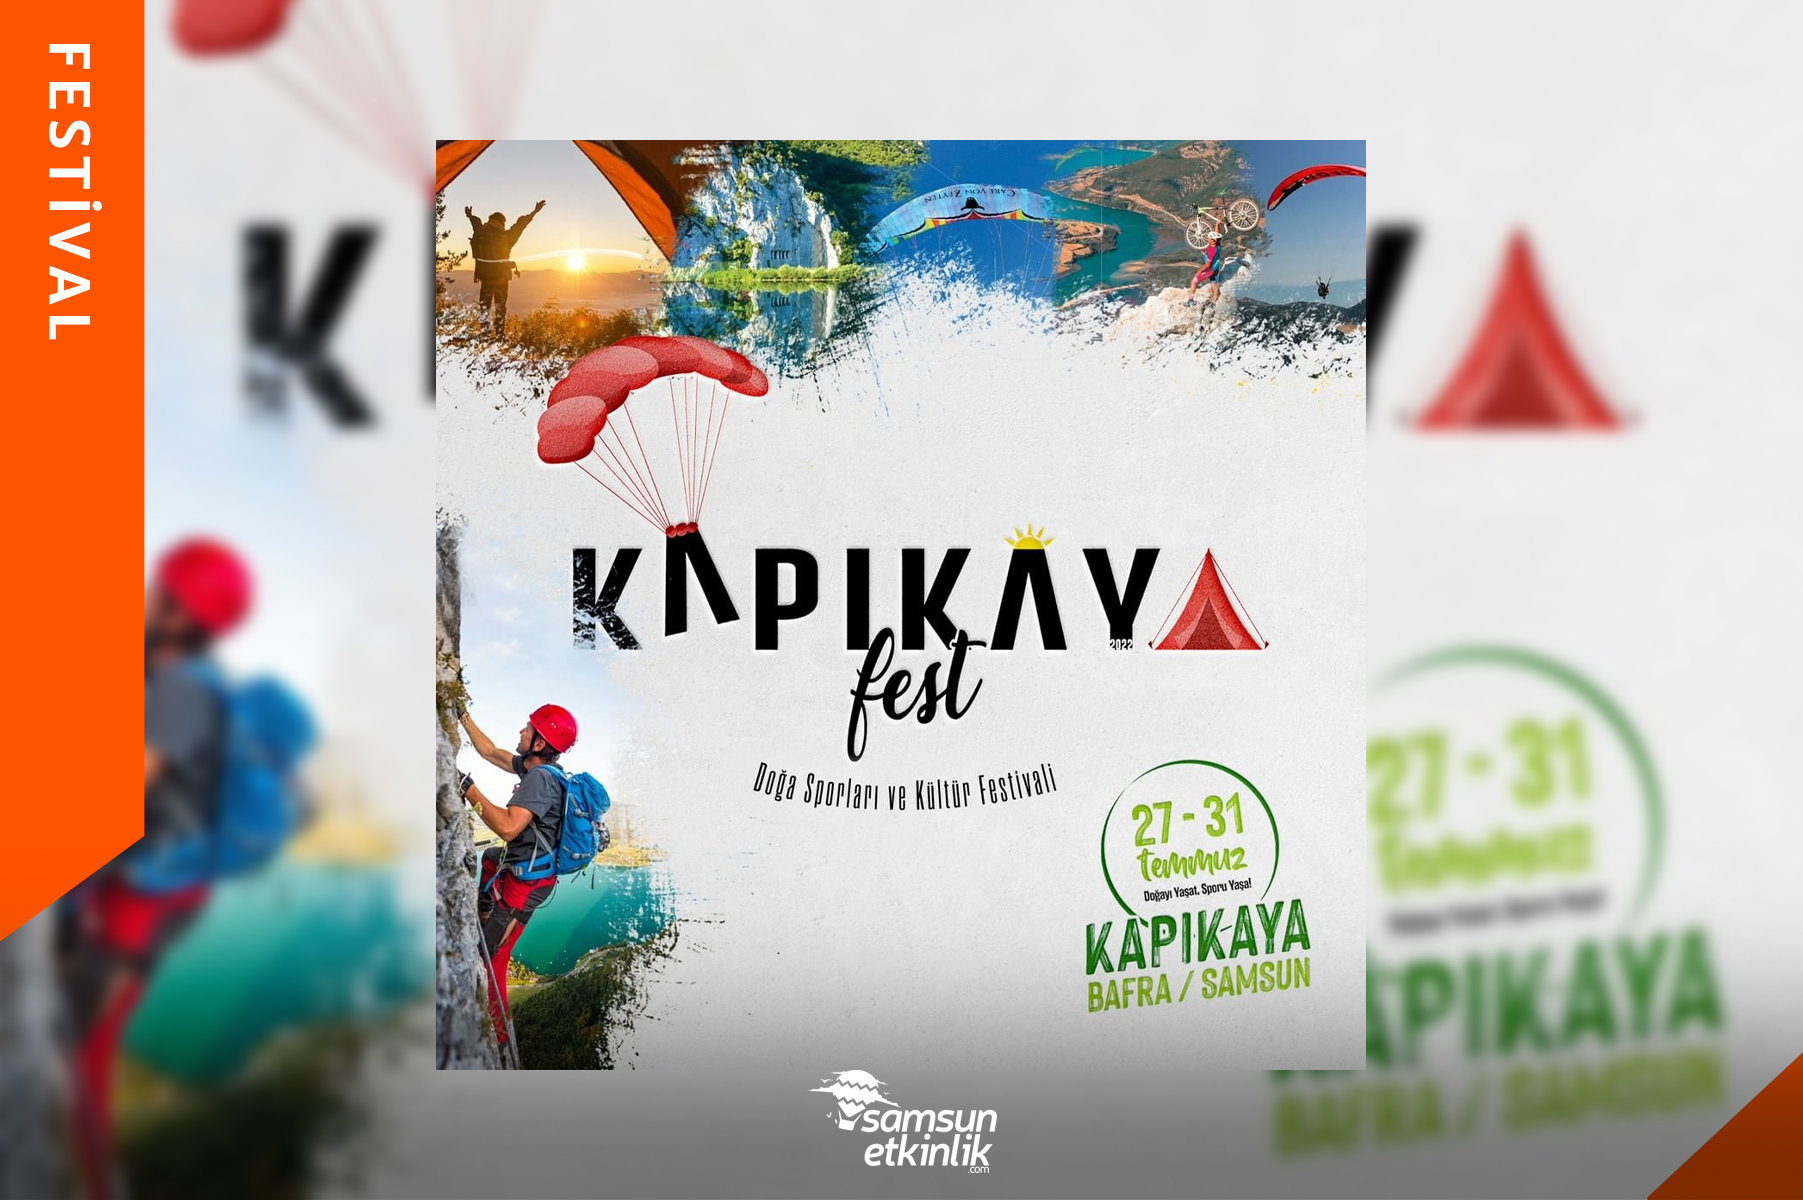 Kapıkayafest Uluslararası Doğa Sporları ve Kültür Festivali